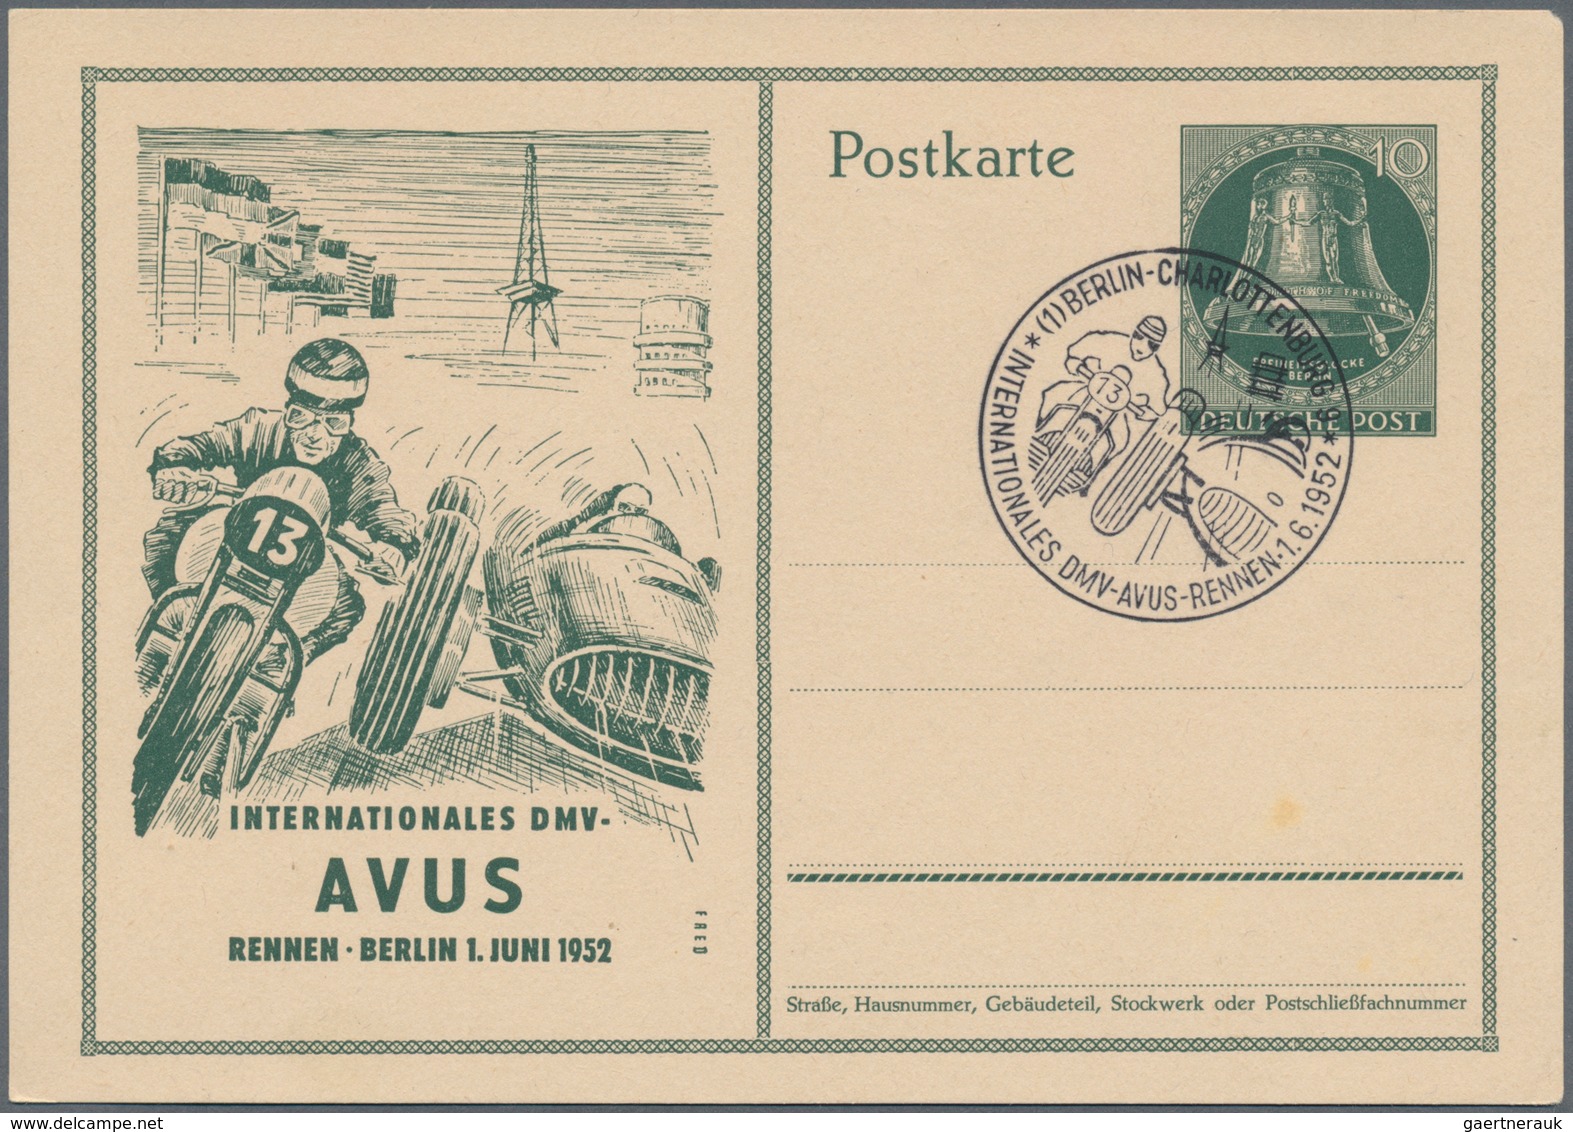 Berlin - Ganzsachen: 1950, zehn verschiedene Sonderpostkarten, alle mit SST (Mi. 670.-)